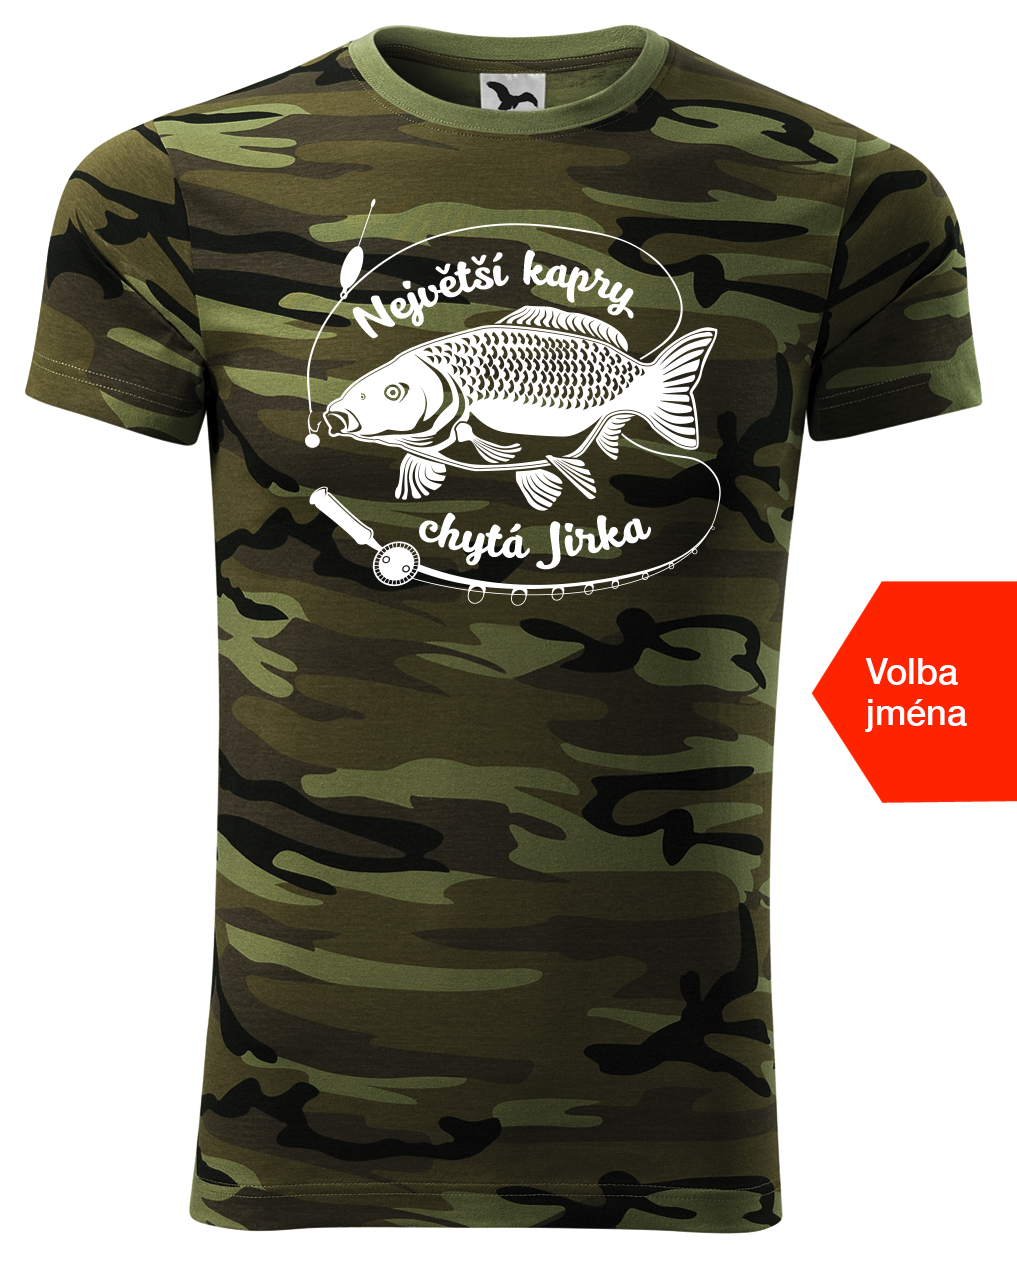 Pánské rybářské maskáčové tričko - Největší kapry chytá Velikost: L, Barva: Maskáčová